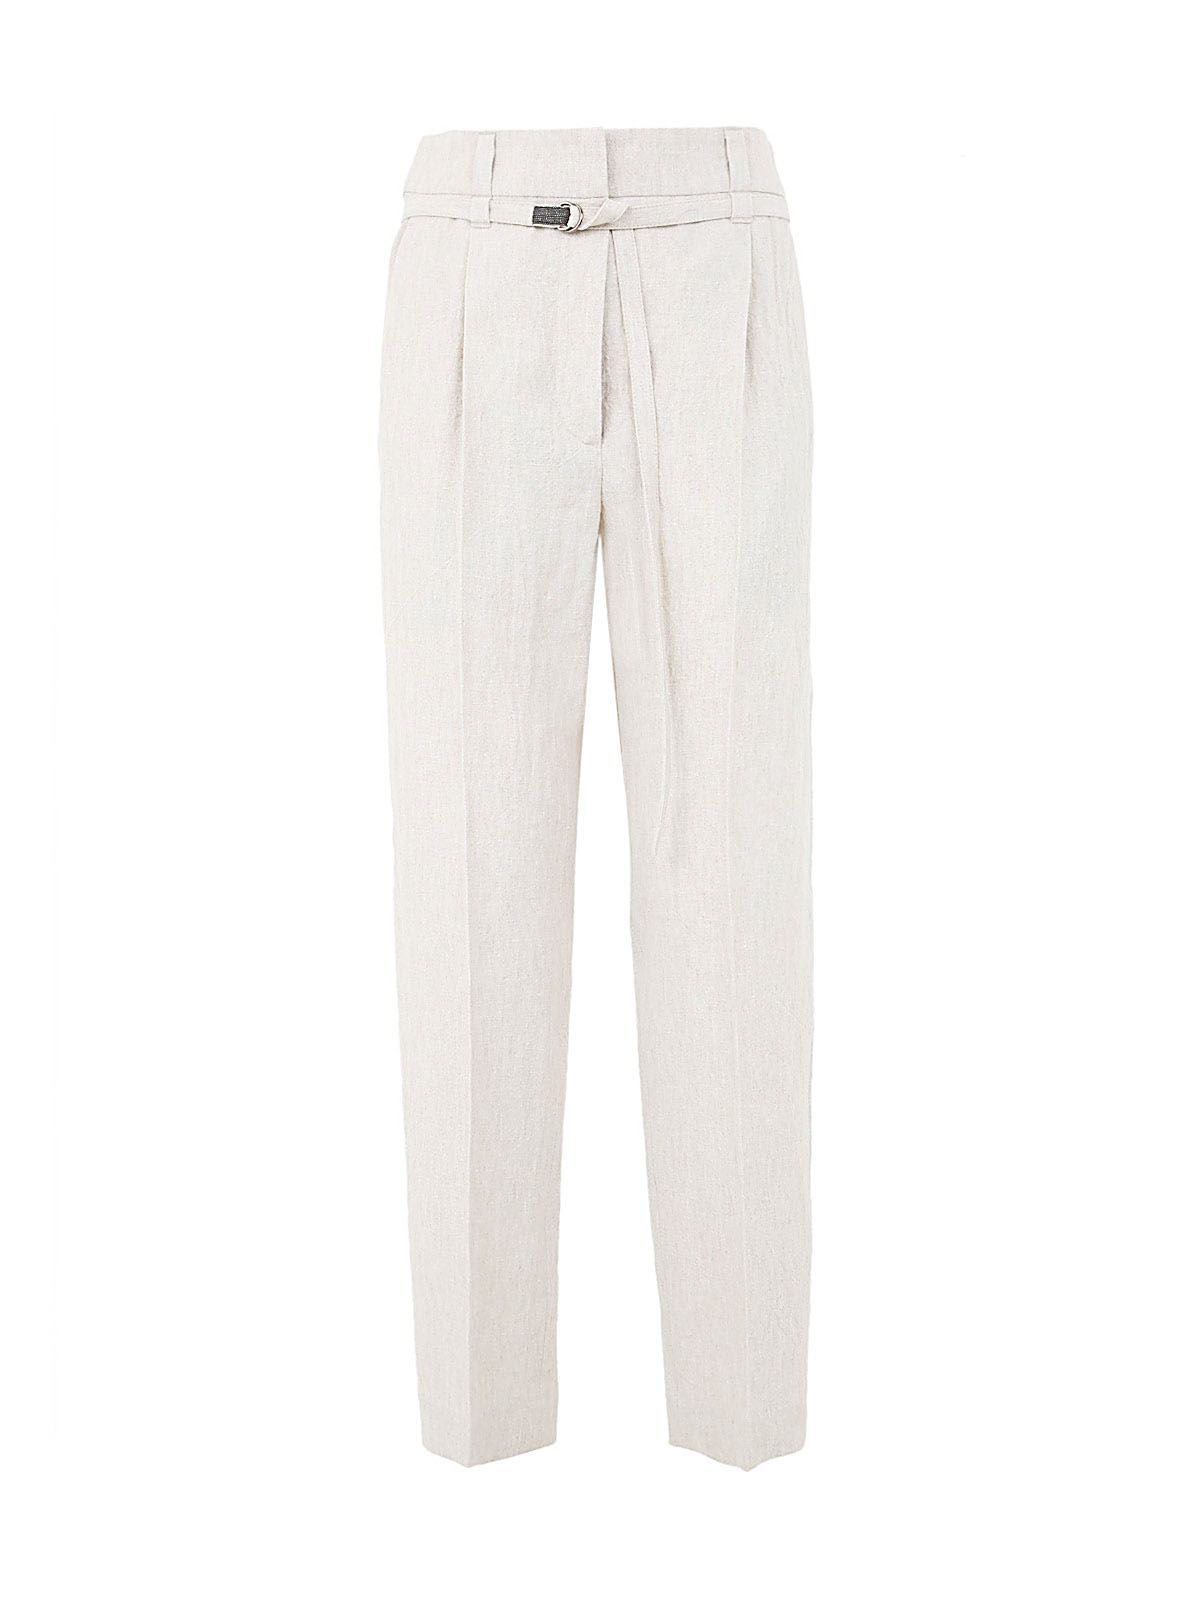 Shop Brunello Cucinelli Women's Linen Straight Pants